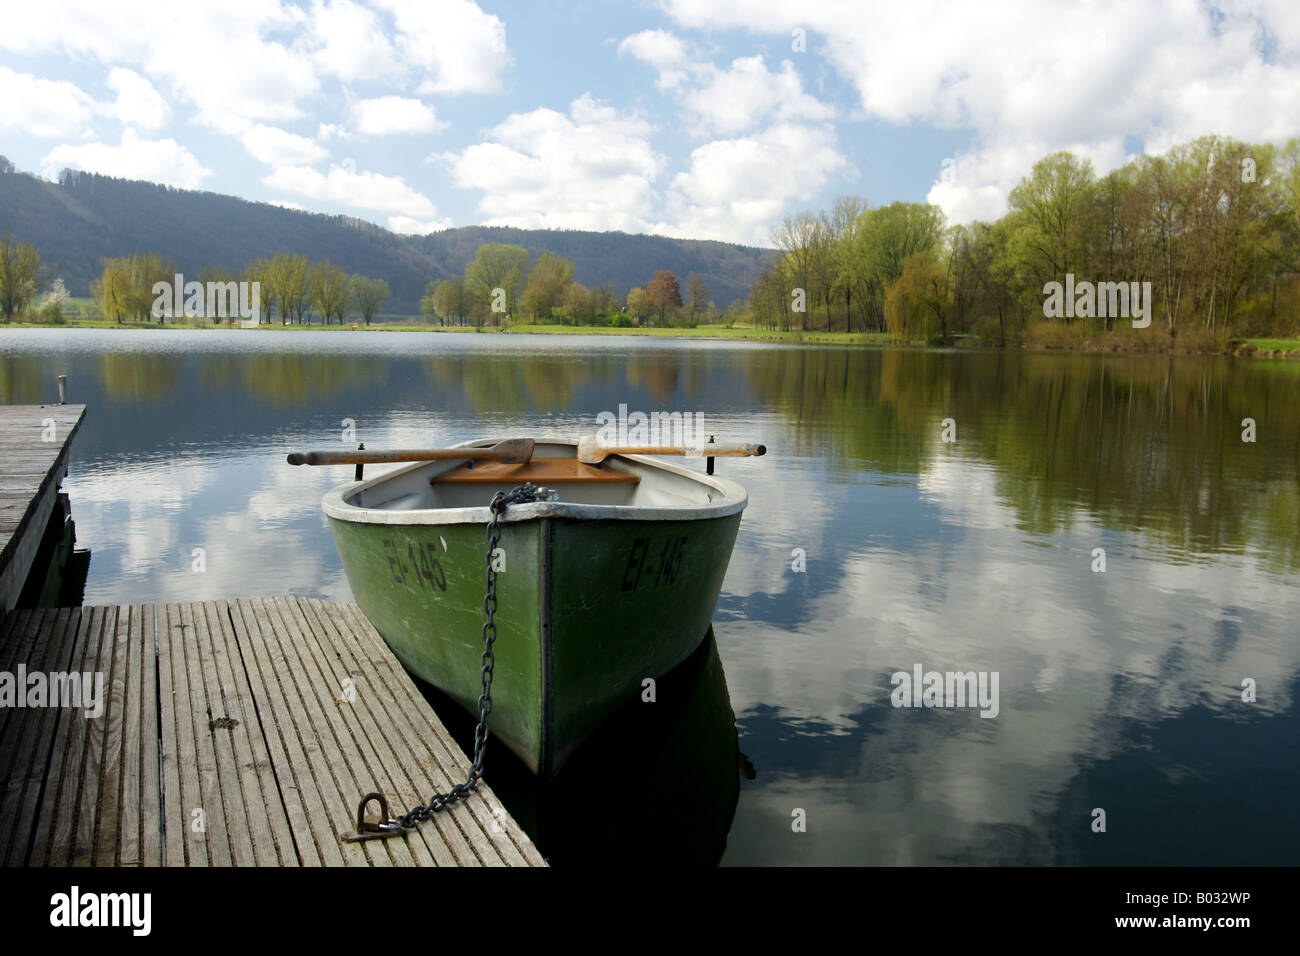 Rowing boat in scenic landscape / Ruderboot in idyllischer Seenlandschaft Stock Photo